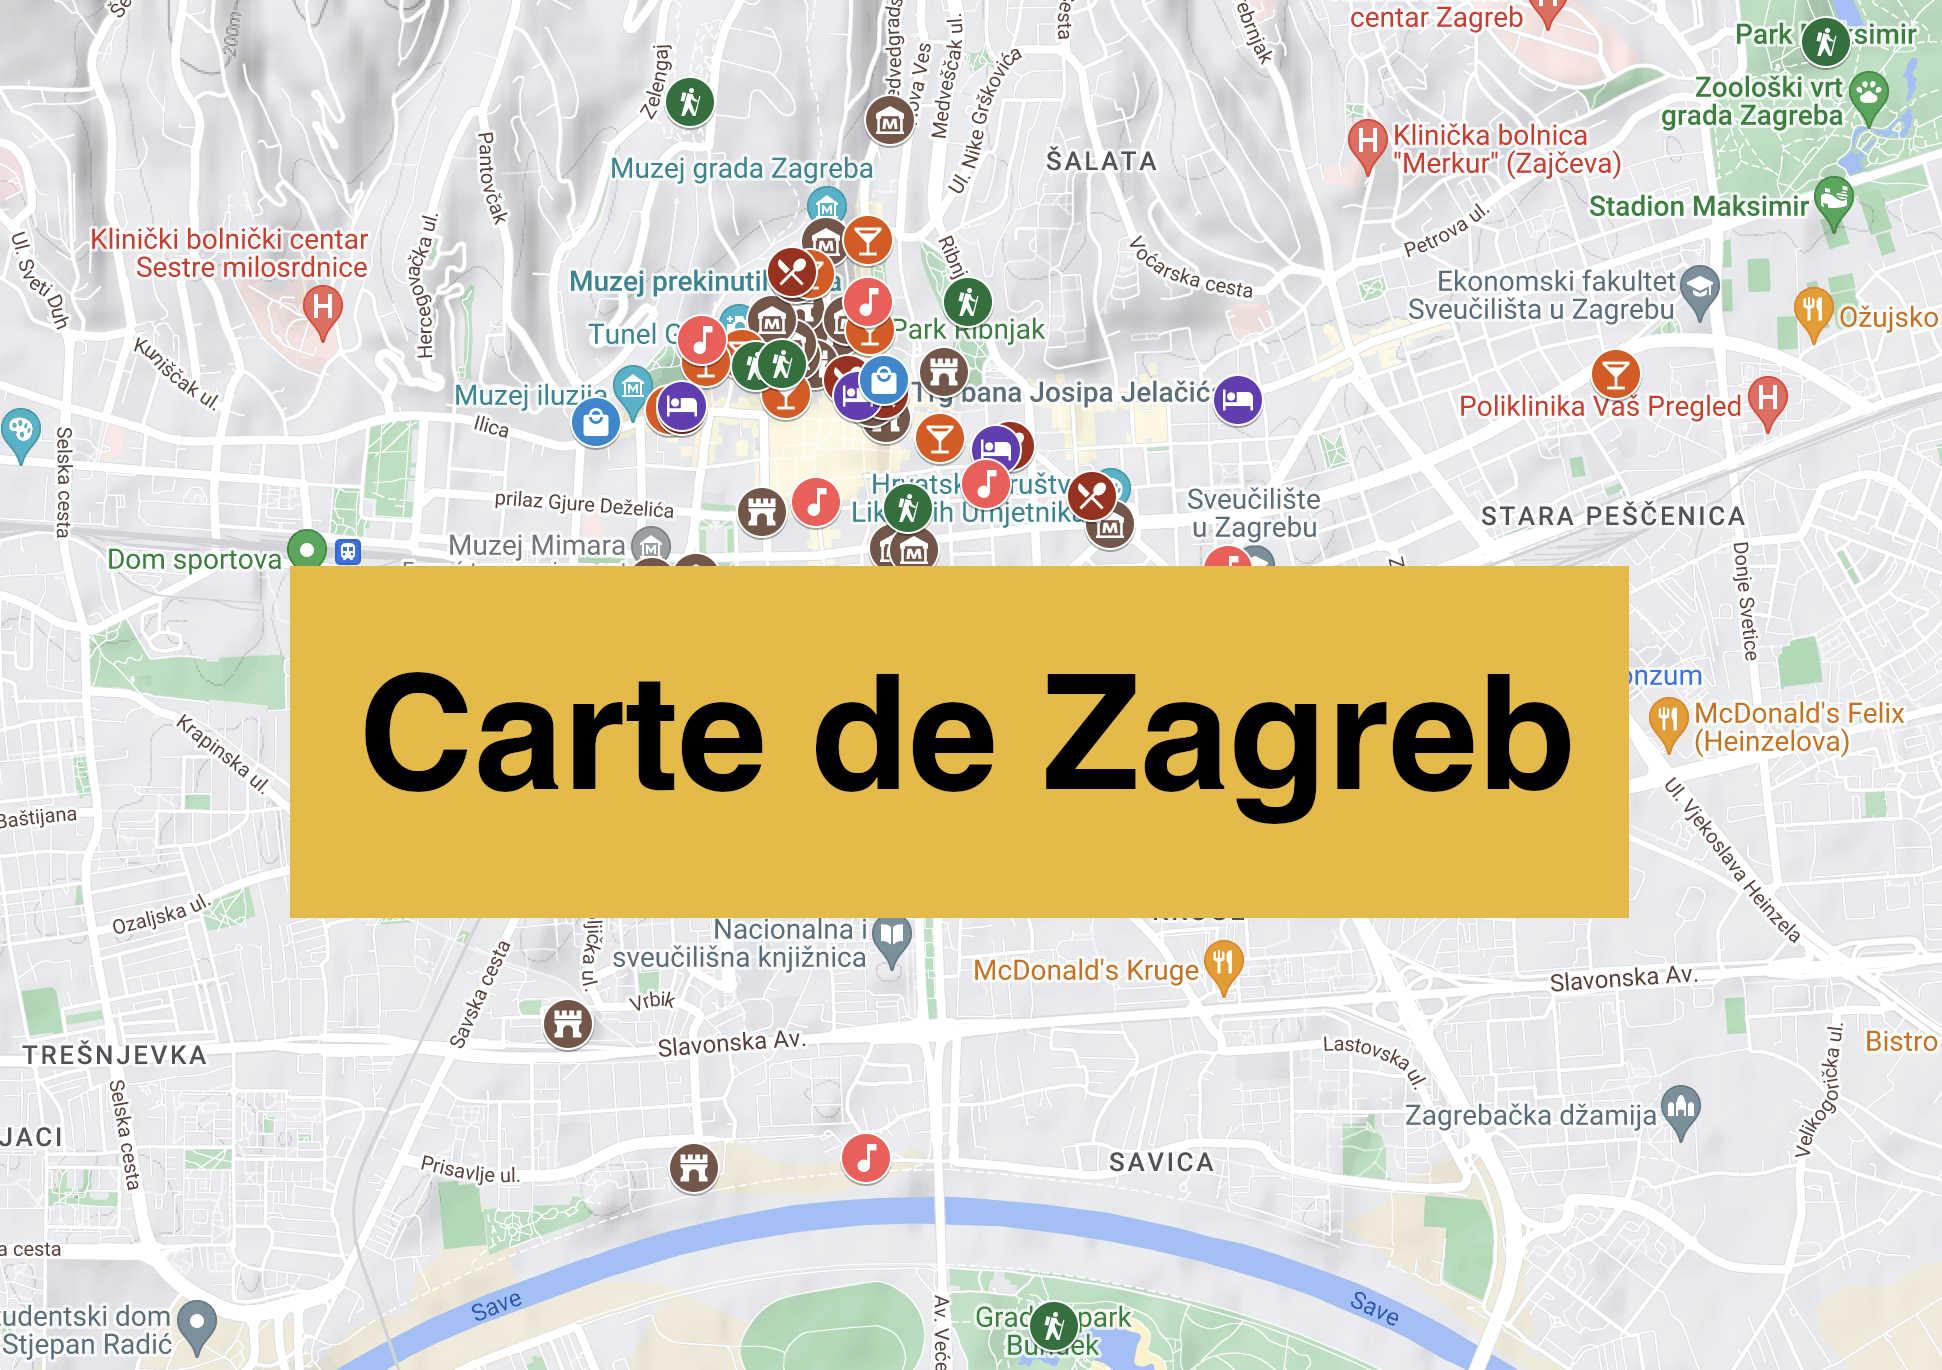 Lire la suite à propos de l’article Carte de Zagreb : Tous les lieux du guide